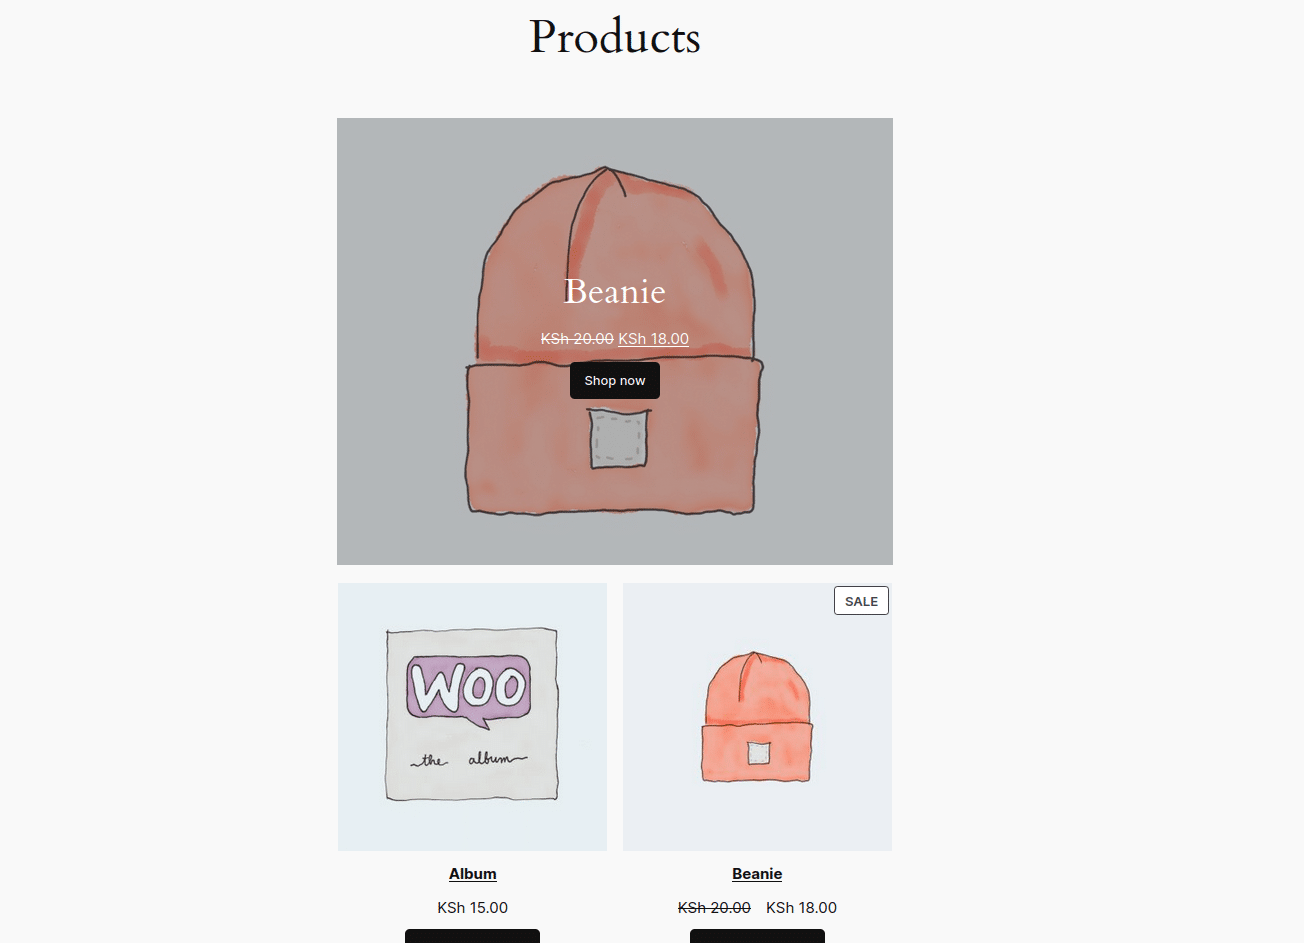 Anteprima della pagina prodotti aggiornata che mostra il berretto in evidenza sopra la griglia dei prodotti